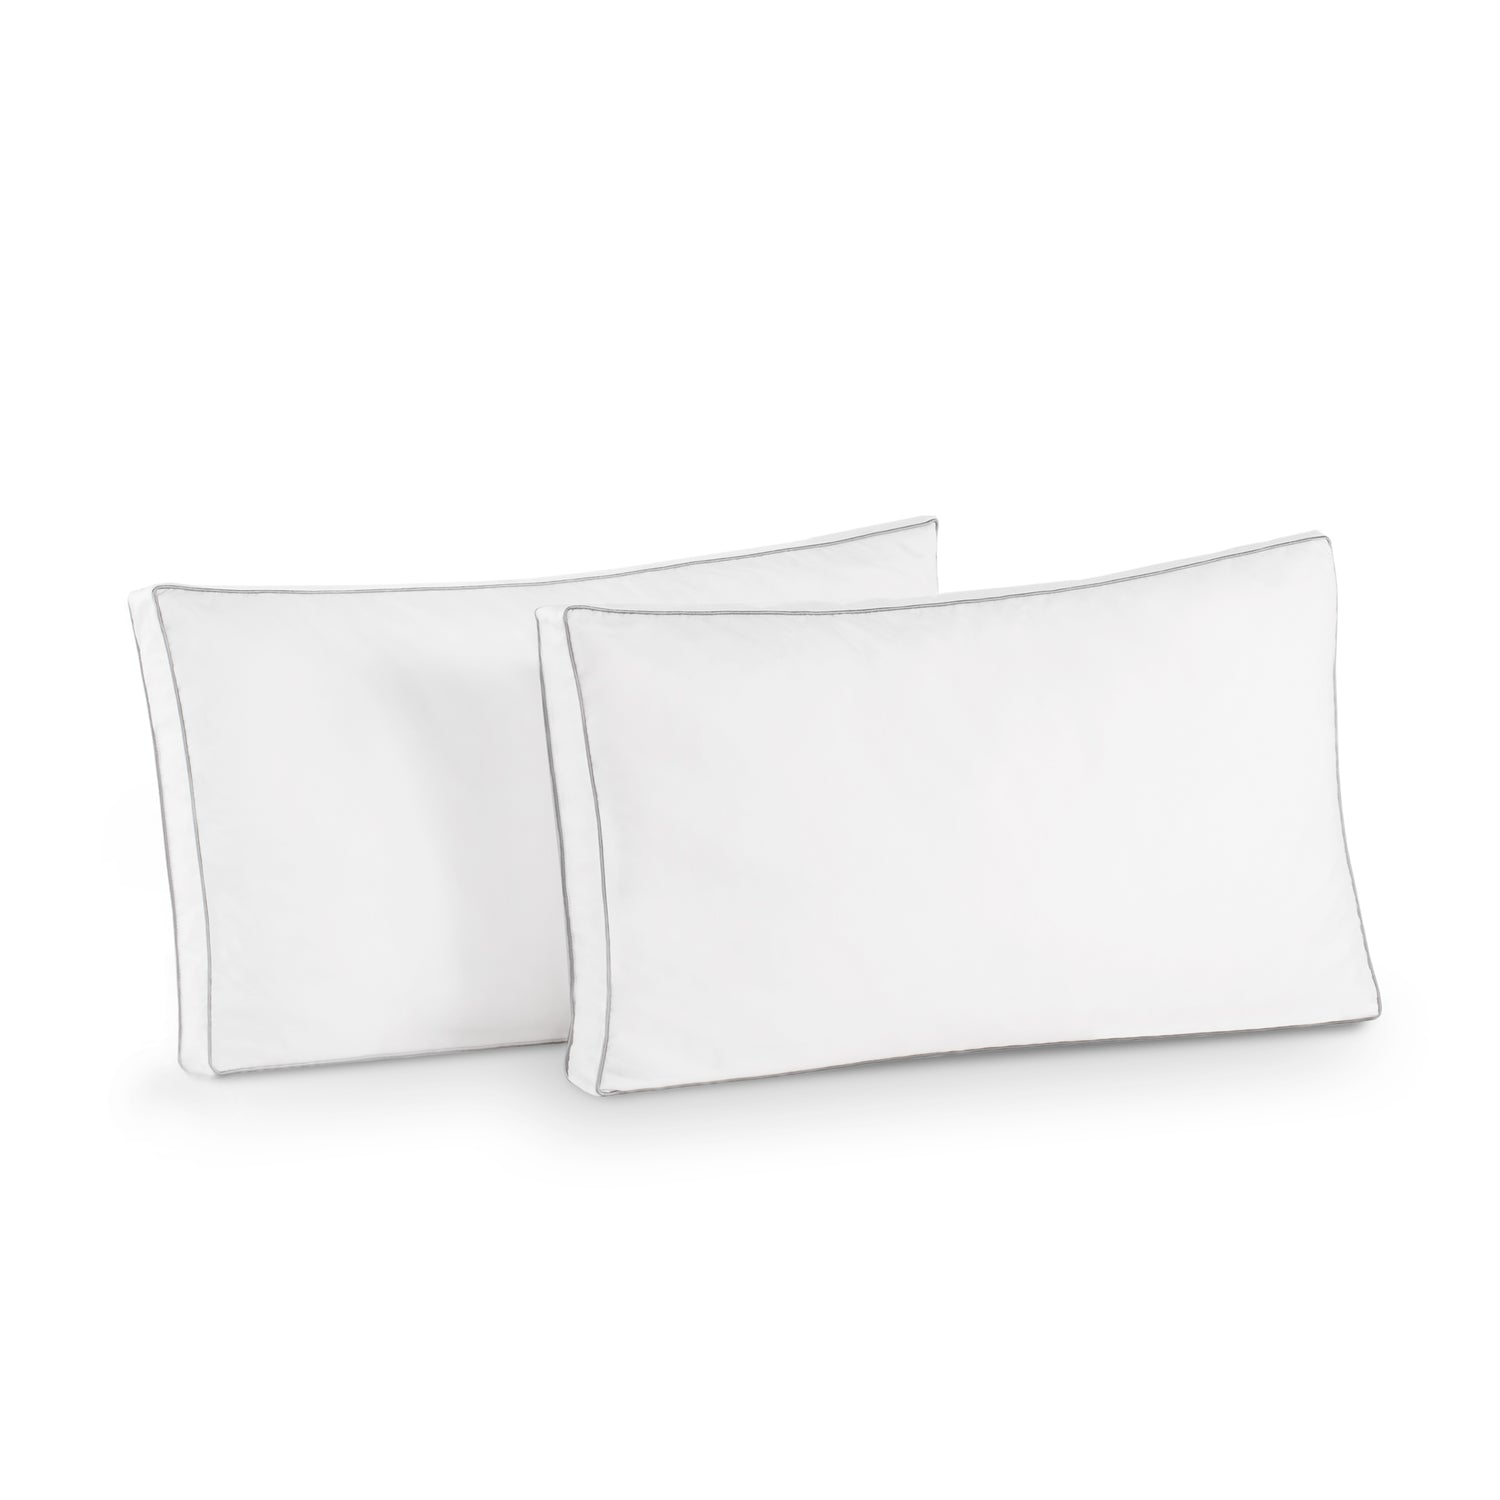 Shredded-Memory-Foam-Pillow-2 Pack